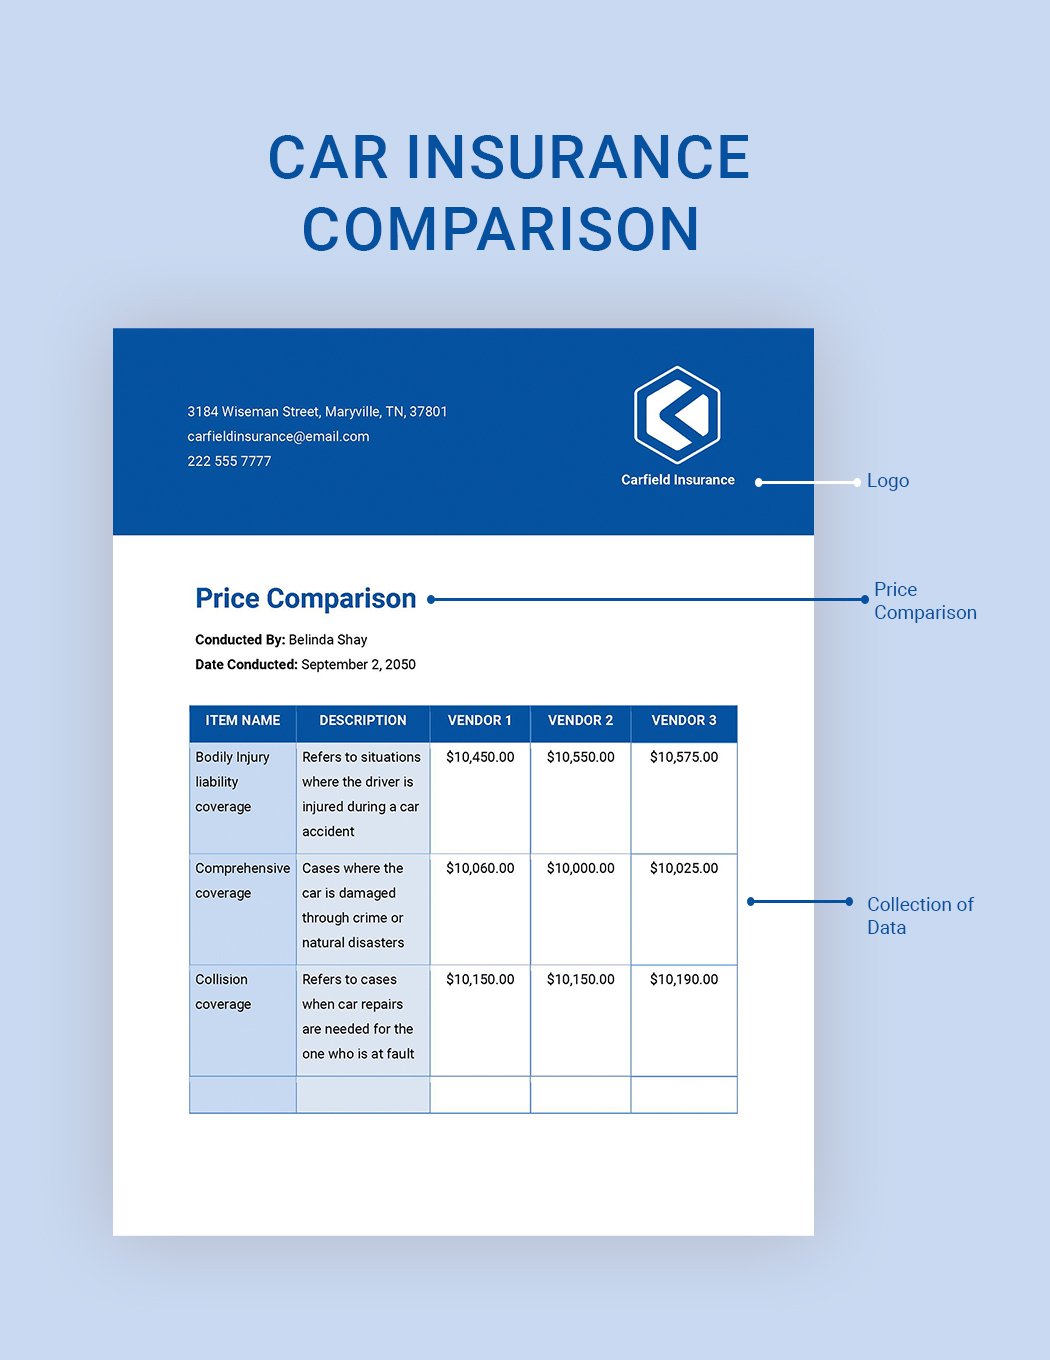 Car Insurance Price Comparison